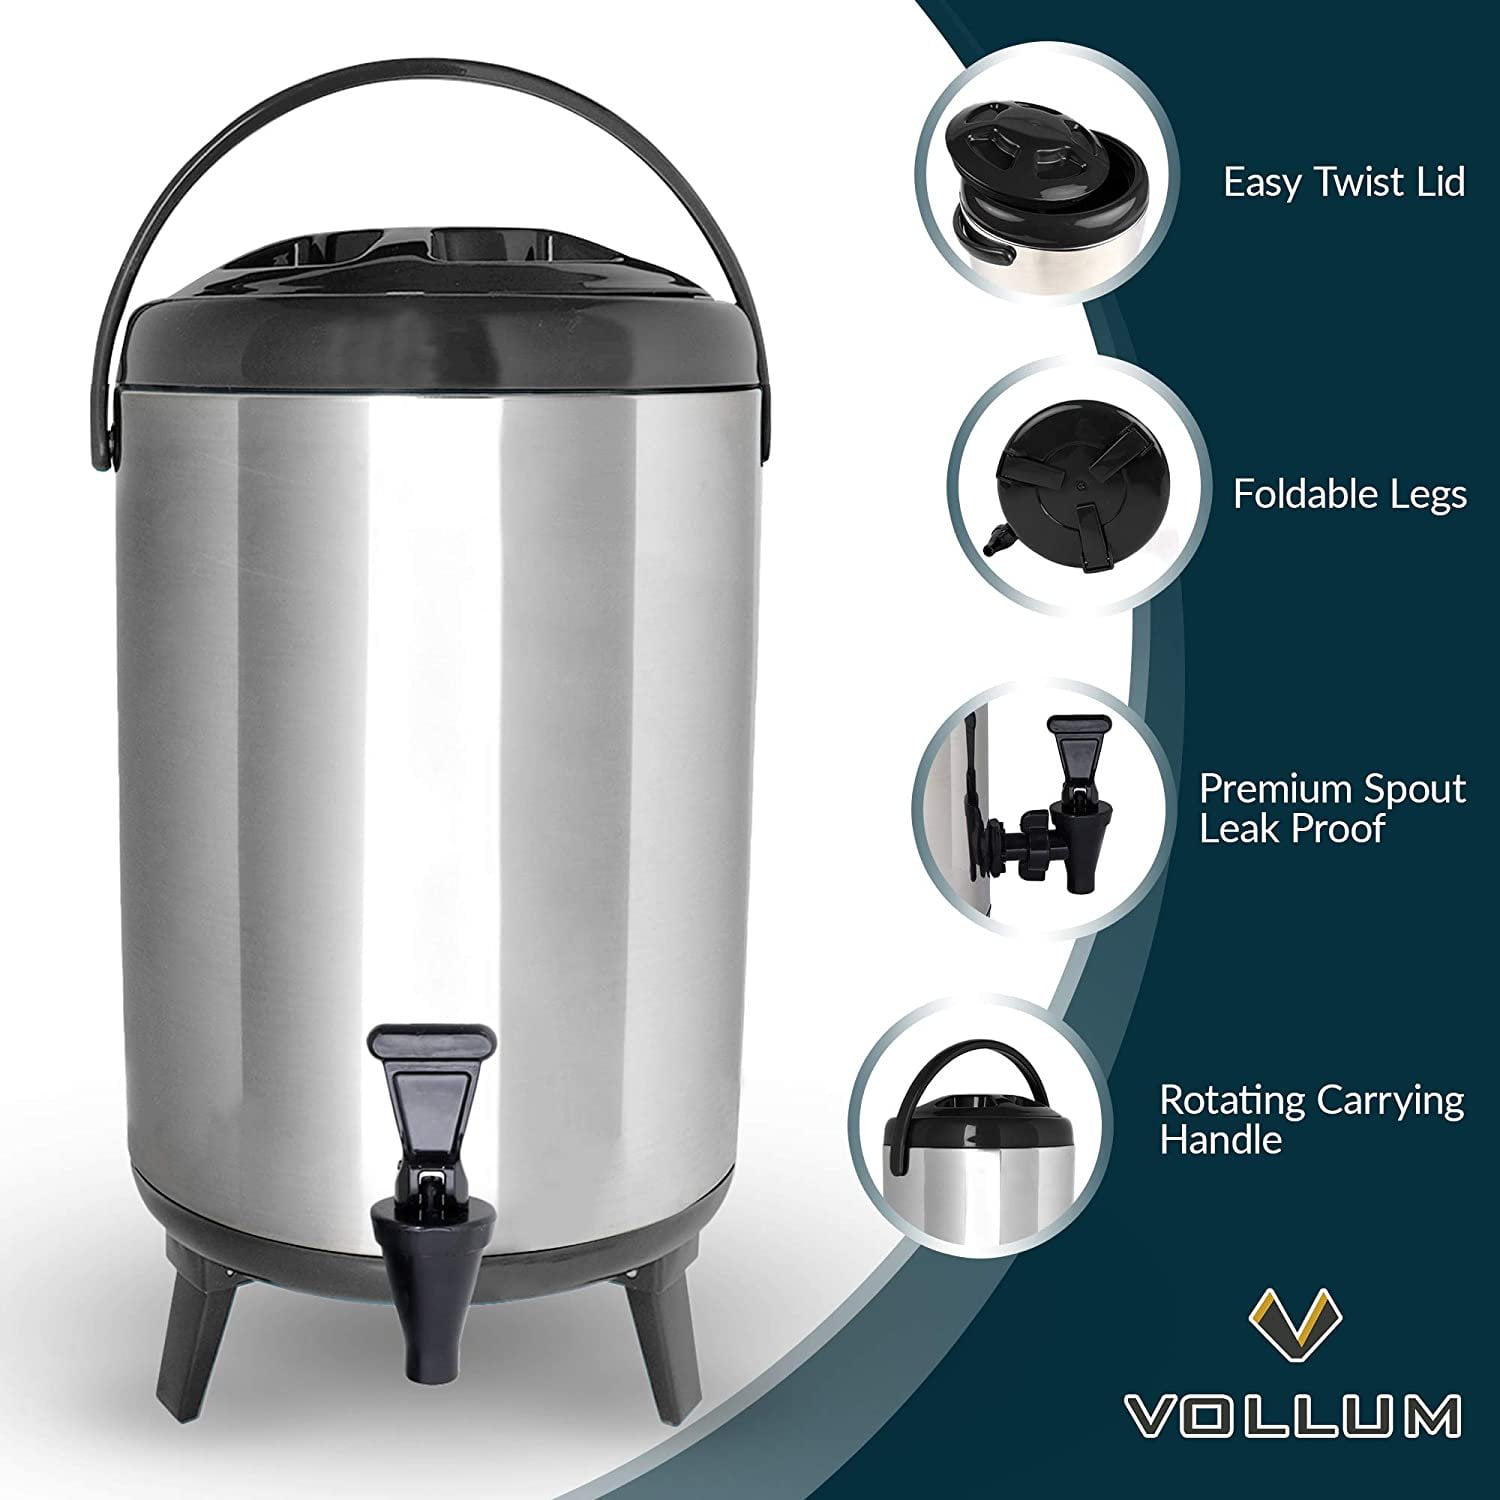 8 Litre (2.1 Gallon) Tea Warmer Dispenser –